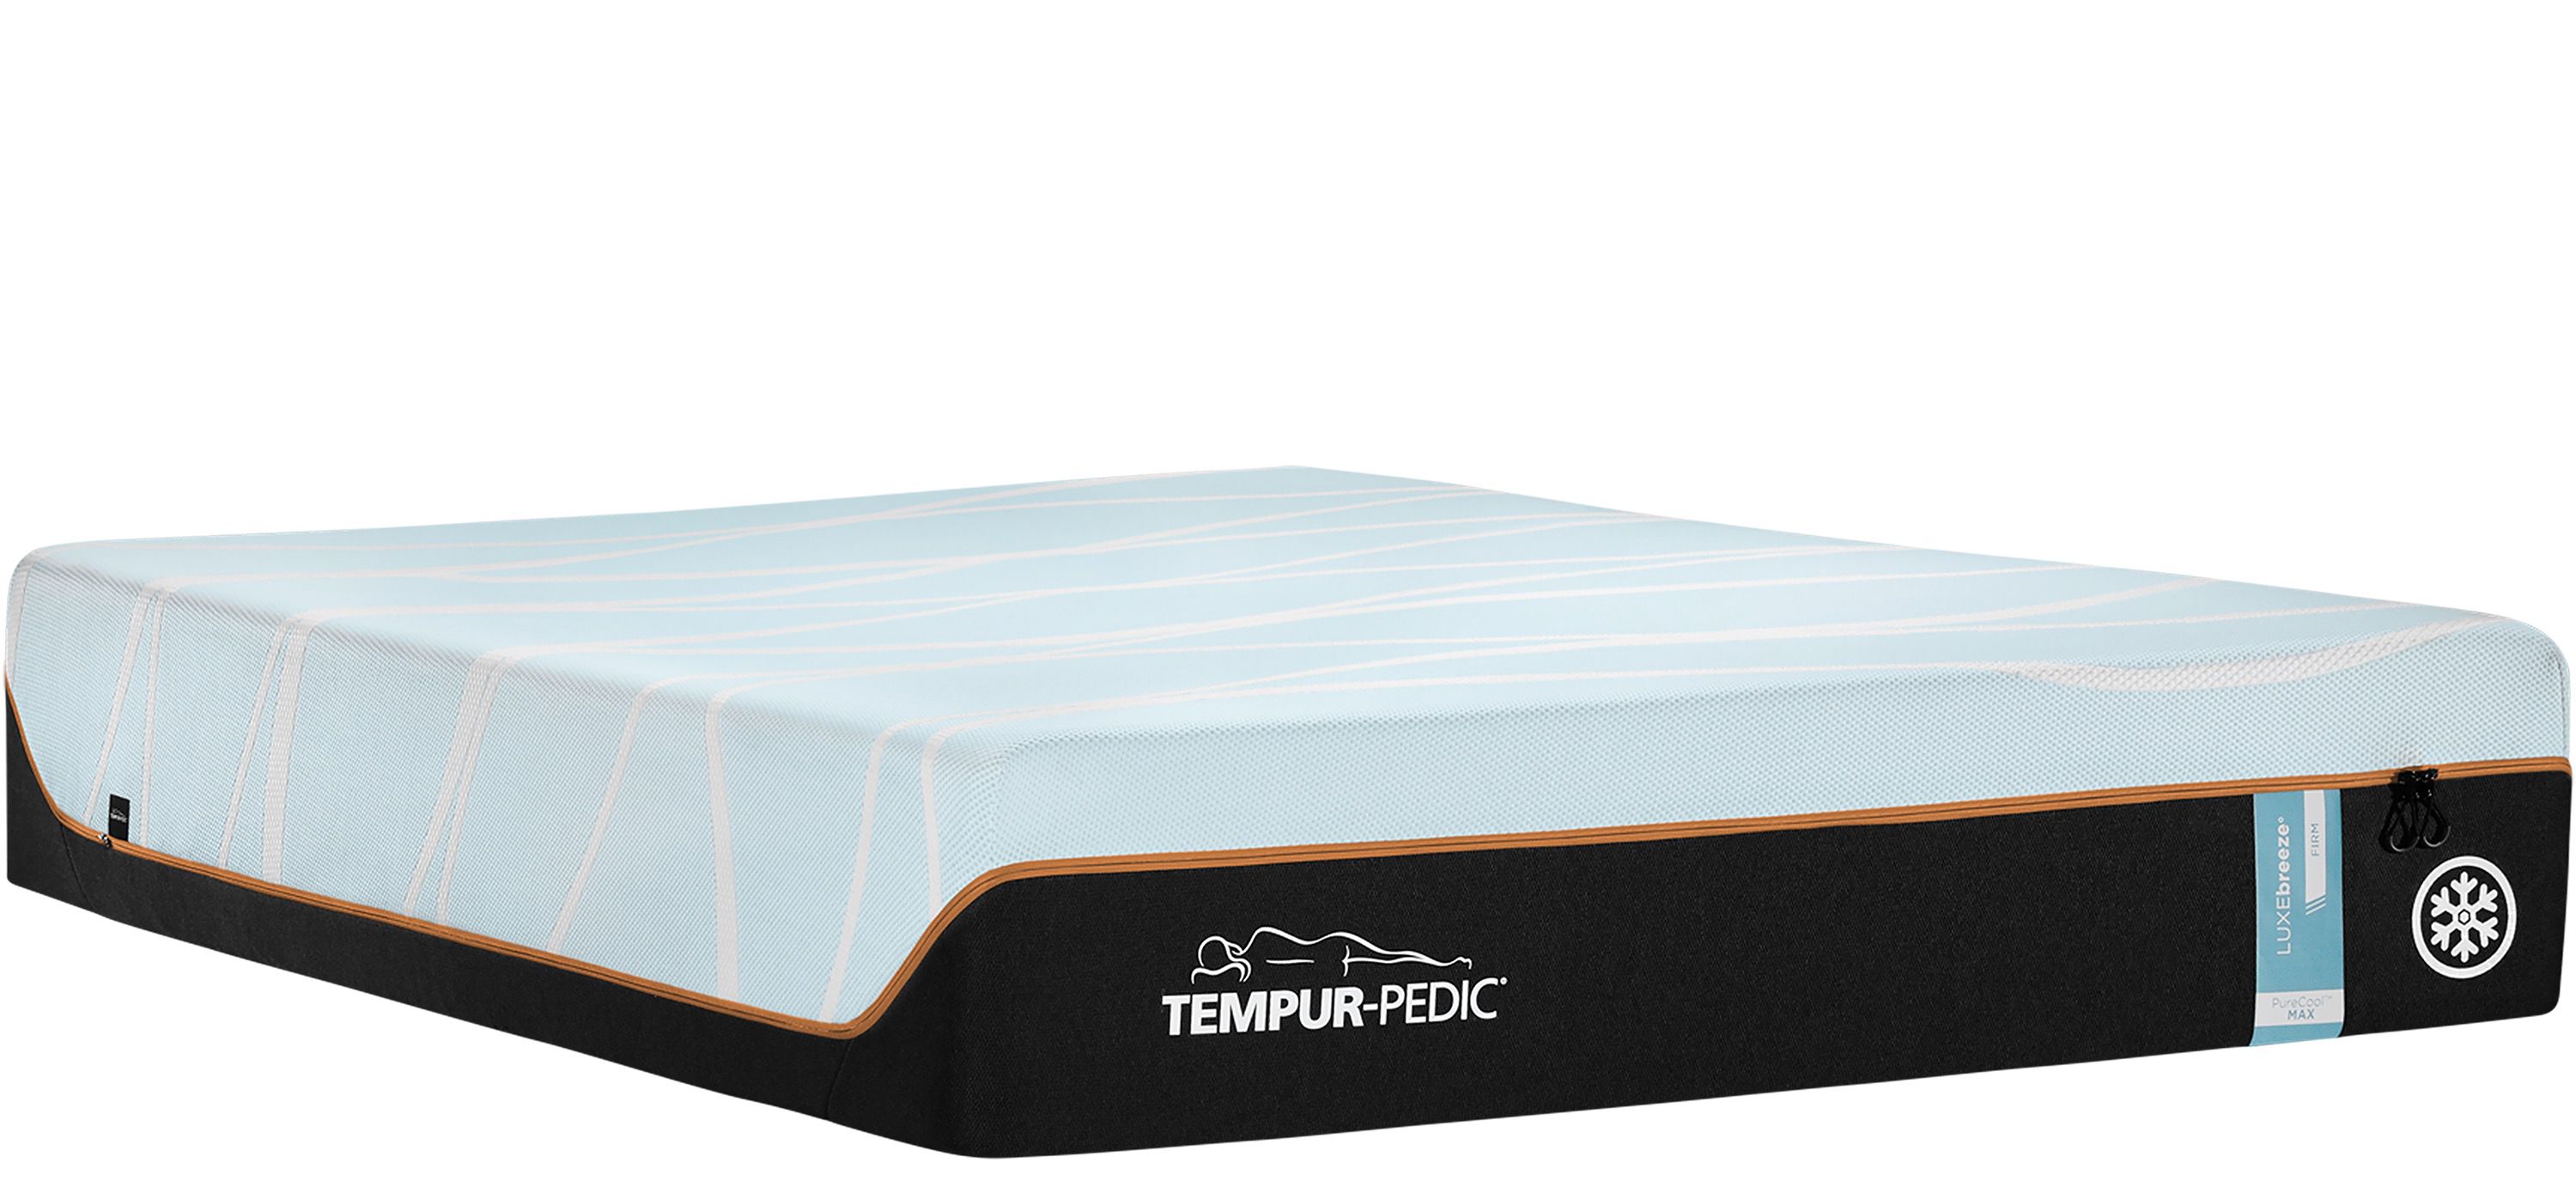 Tempur-Pedic Luxe Breeze Firm Memory Foam Mattress